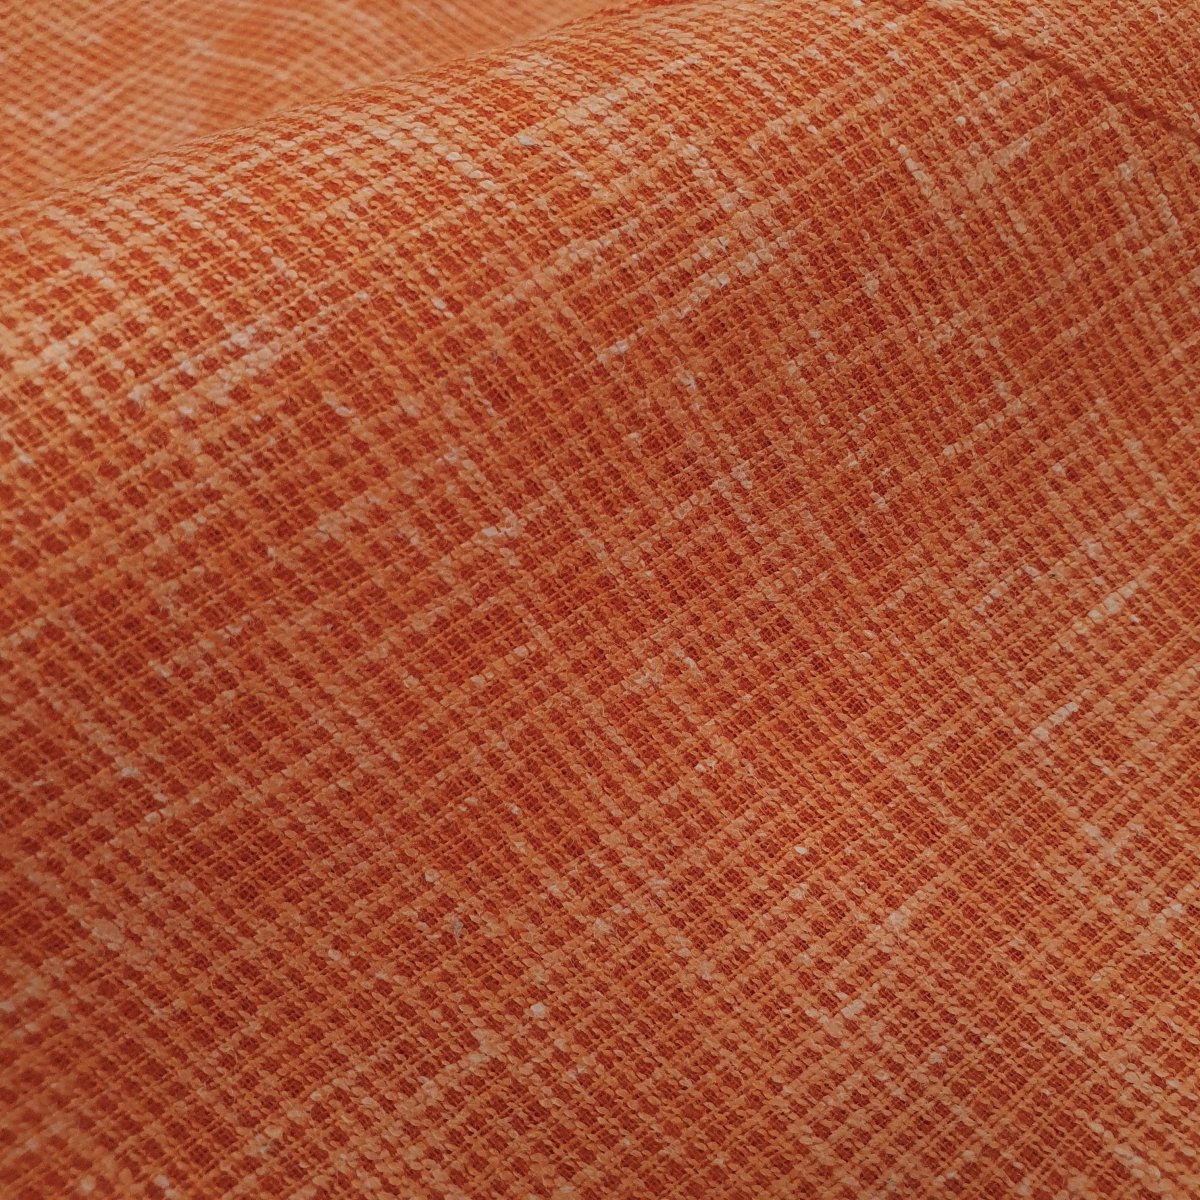 Unstitched Orange Mini Kurta Pyjama